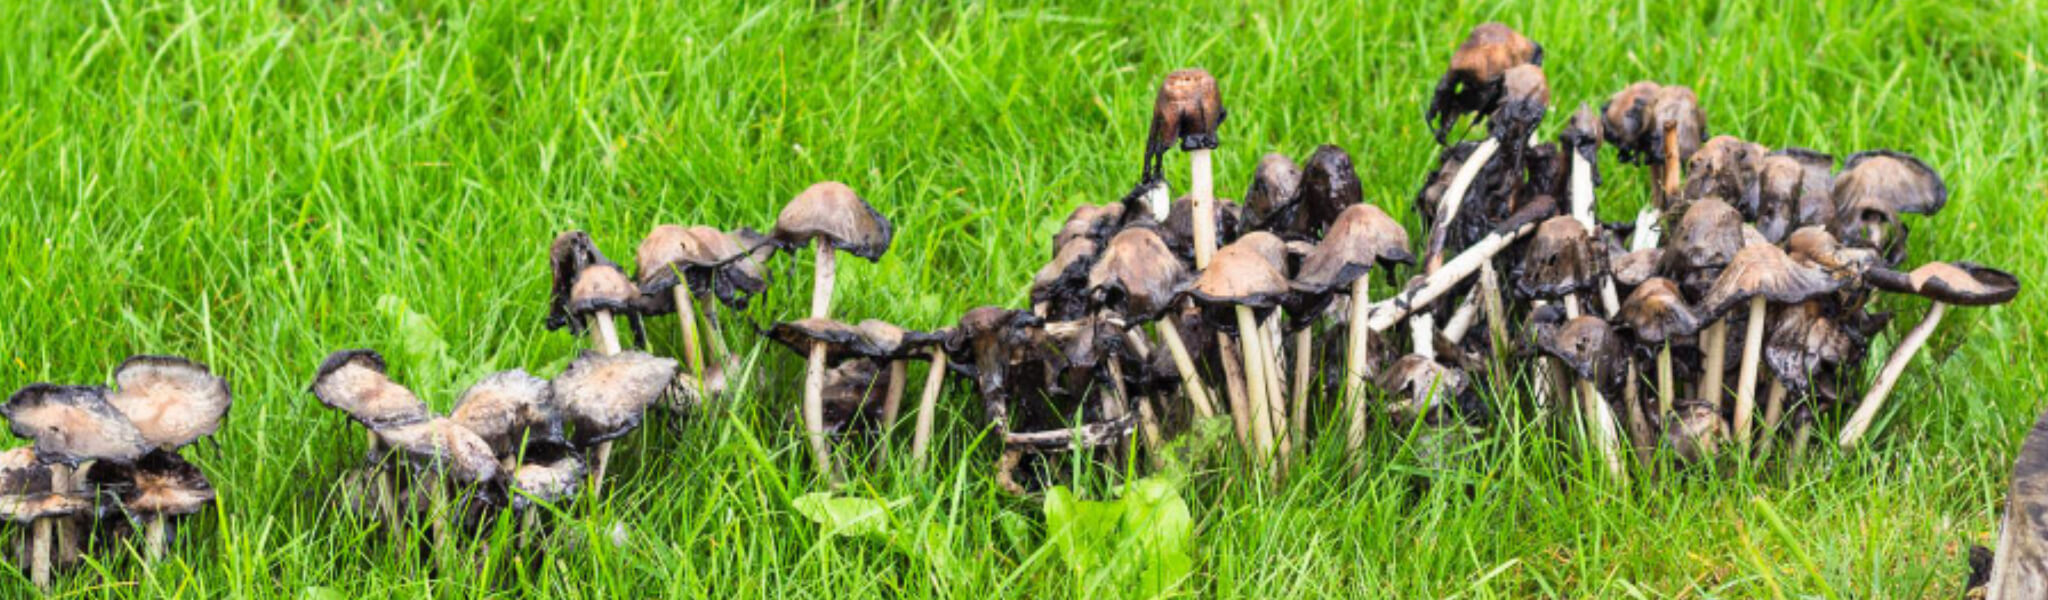 Growing magic mushrooms